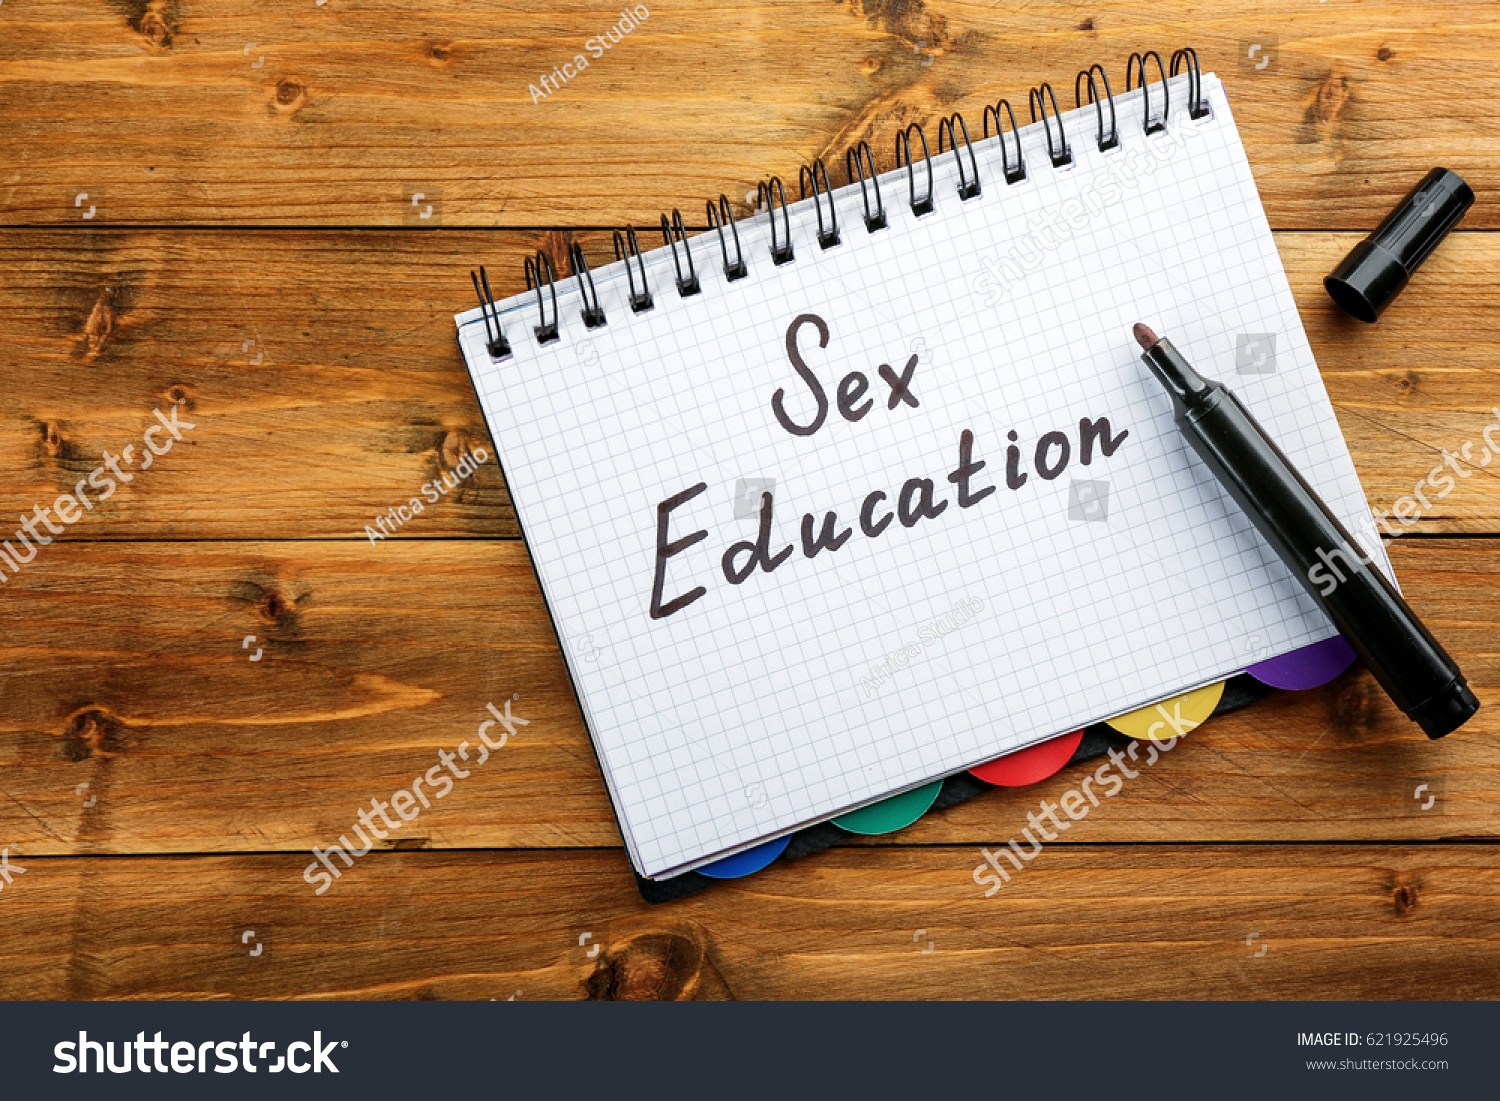 Powerpoint Template Sex Education Anatomie Sexuality Njiujmlun 0821